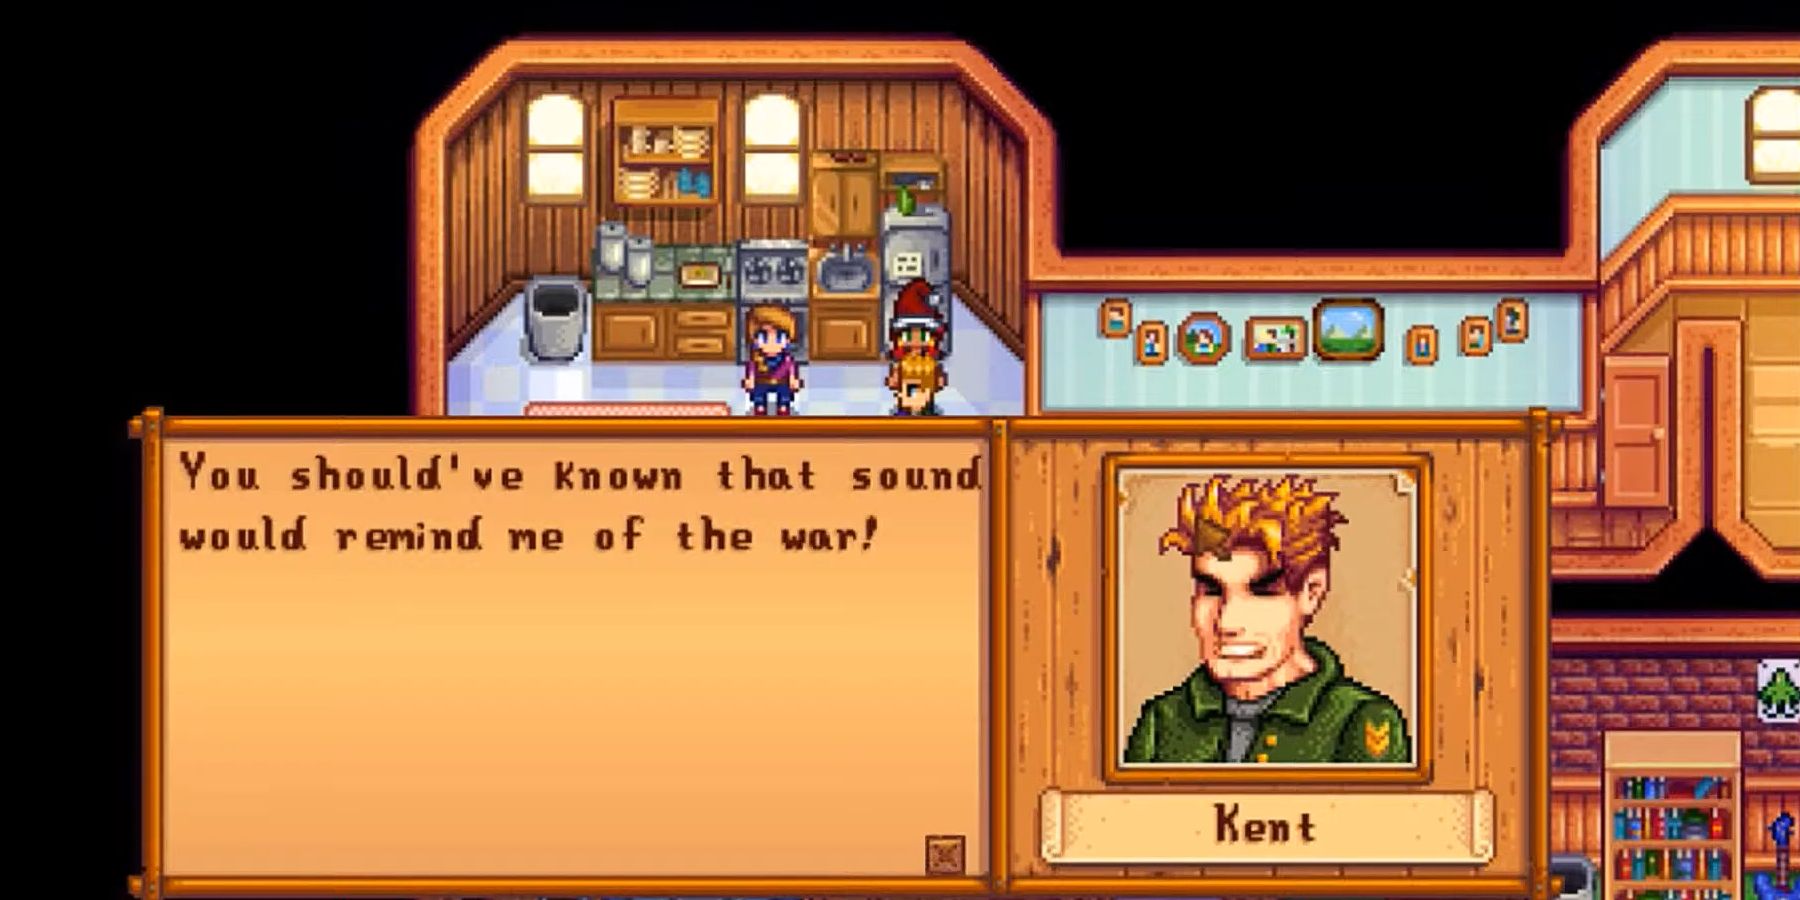 Kent schreeuwde tegen de speler over het geluid van popcorn dat hem deed denken aan de oorlog in Stardew Valley